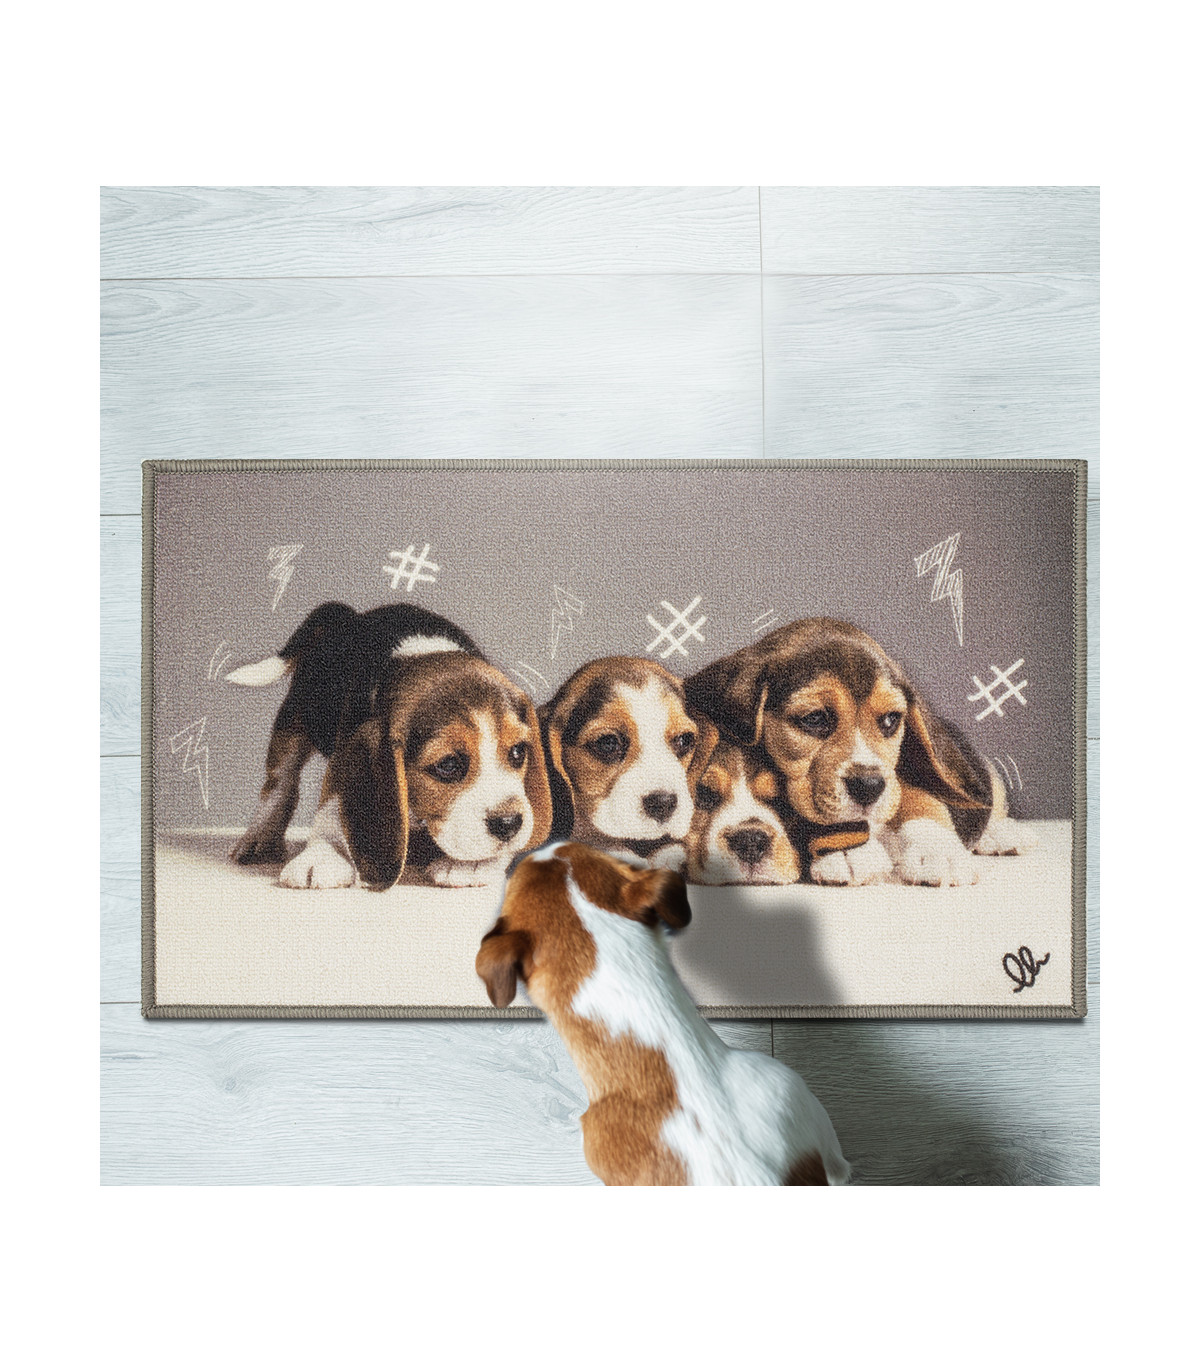 1# tappetino antiscivolo tappetino da bagno tappeto Gift Zhouba flanella colorato Dog Welcome Floor indoor outdoor 40 x 60 cm 